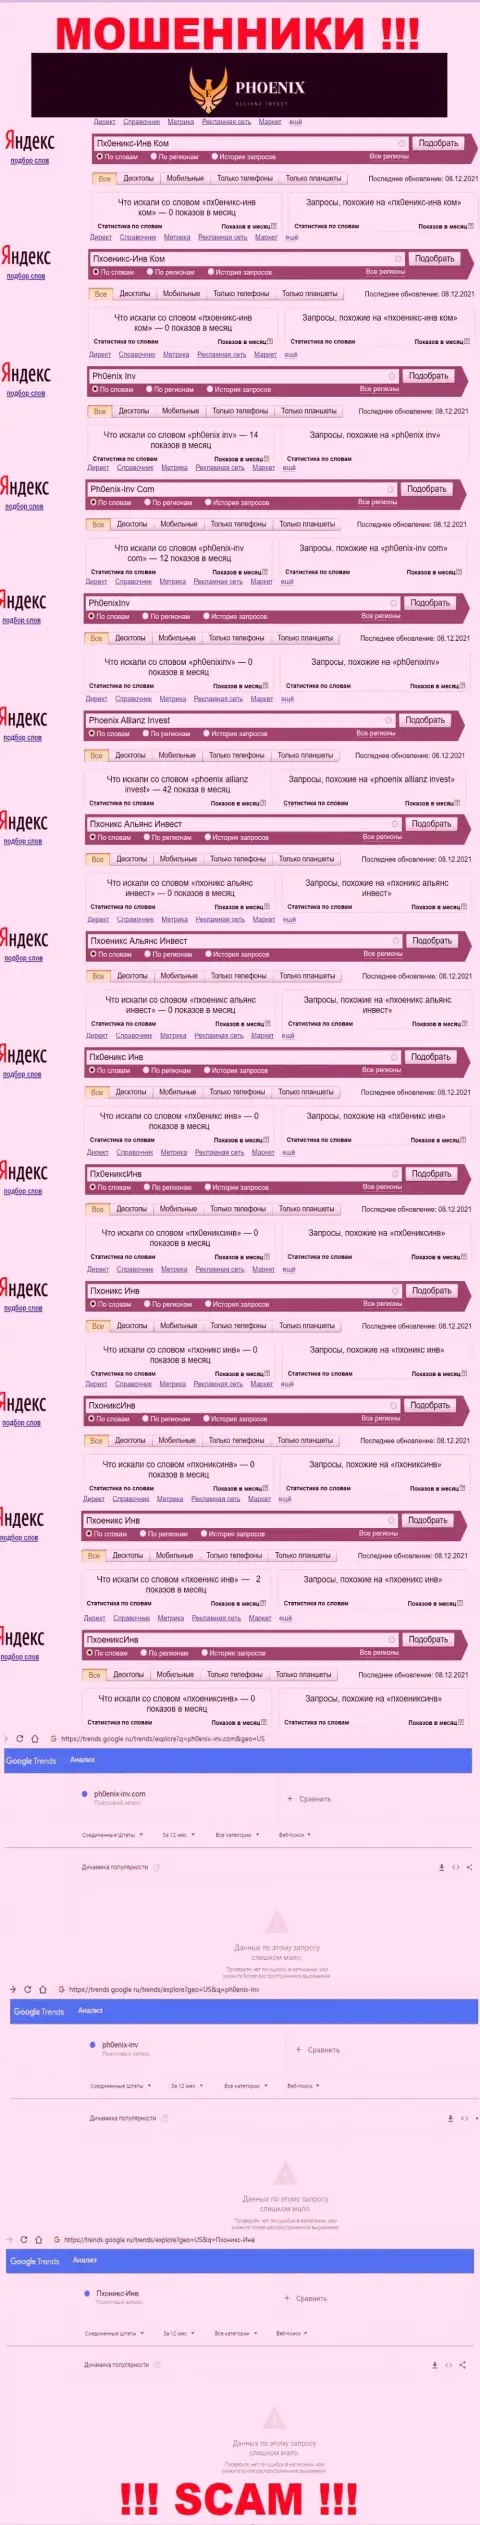 Скриншот итогов онлайн запросов по жульнической организации Ph0enix-Inv Com